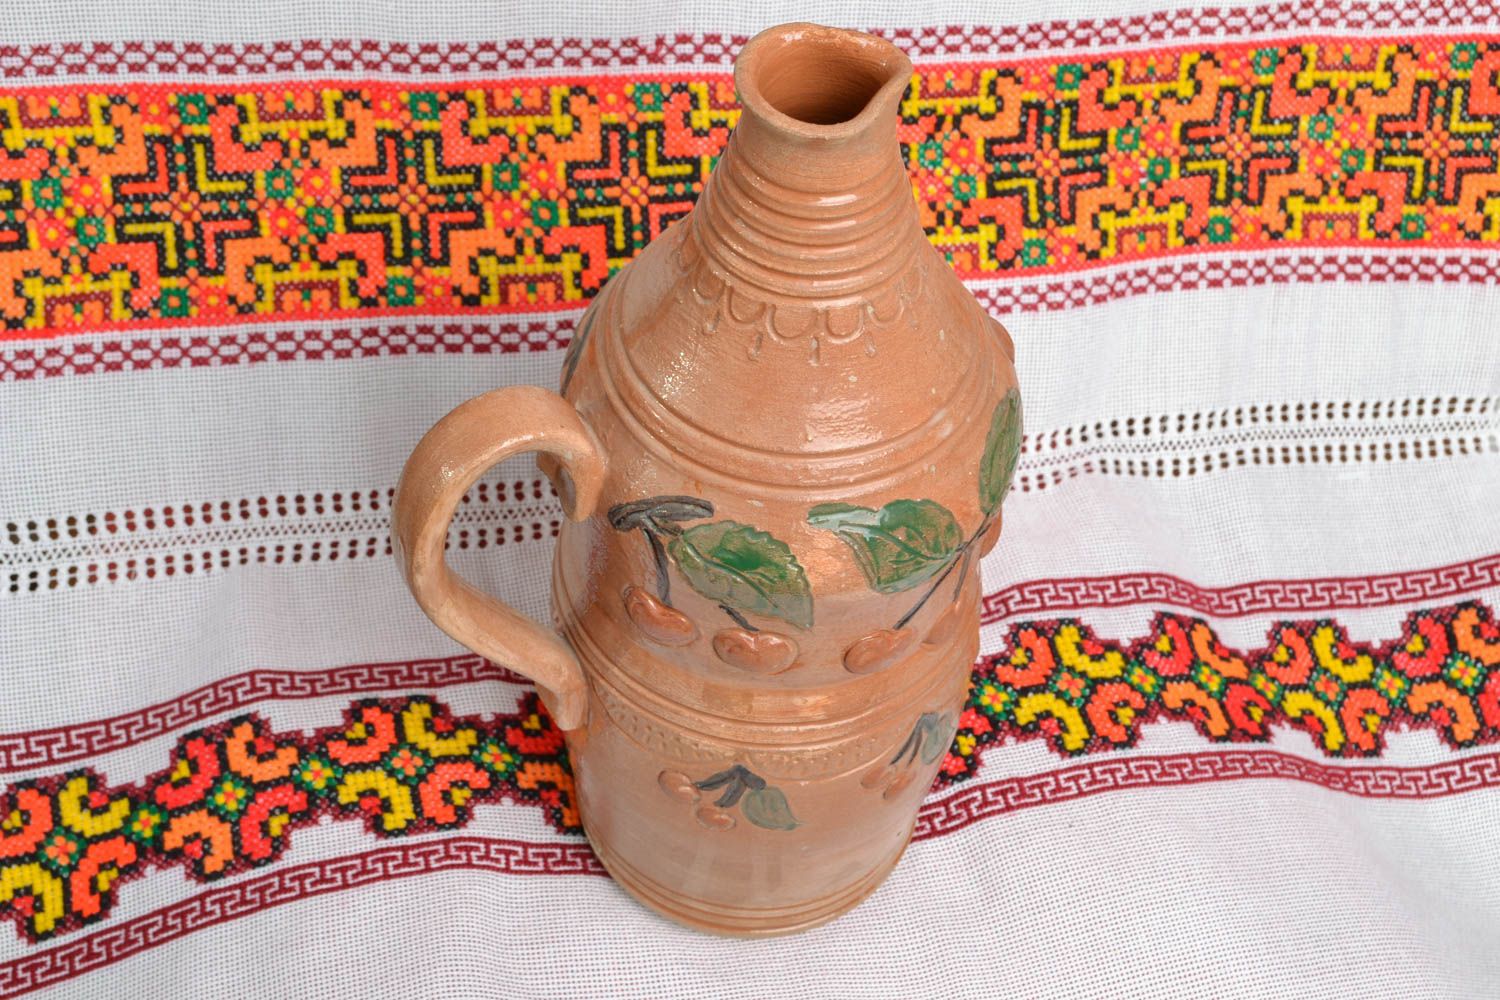 30 oz handmade ceramic terracotta wine bottle for home décor 3 lb photo 5